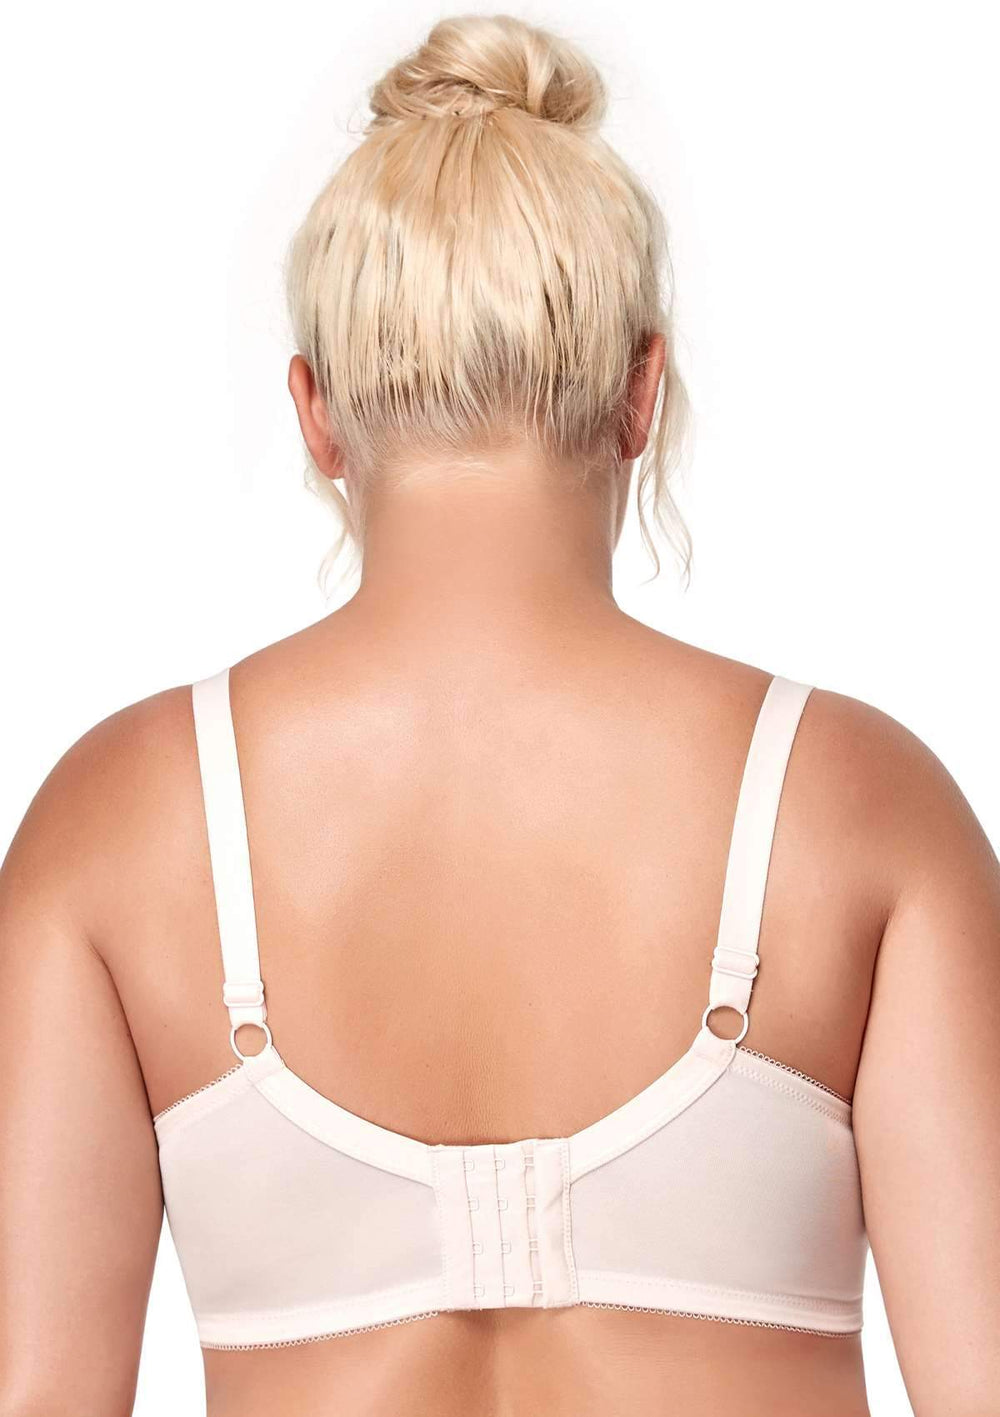 Entyinea Women's Wireless Bra Fashion Lace Unlined Underwire Bra A 50 